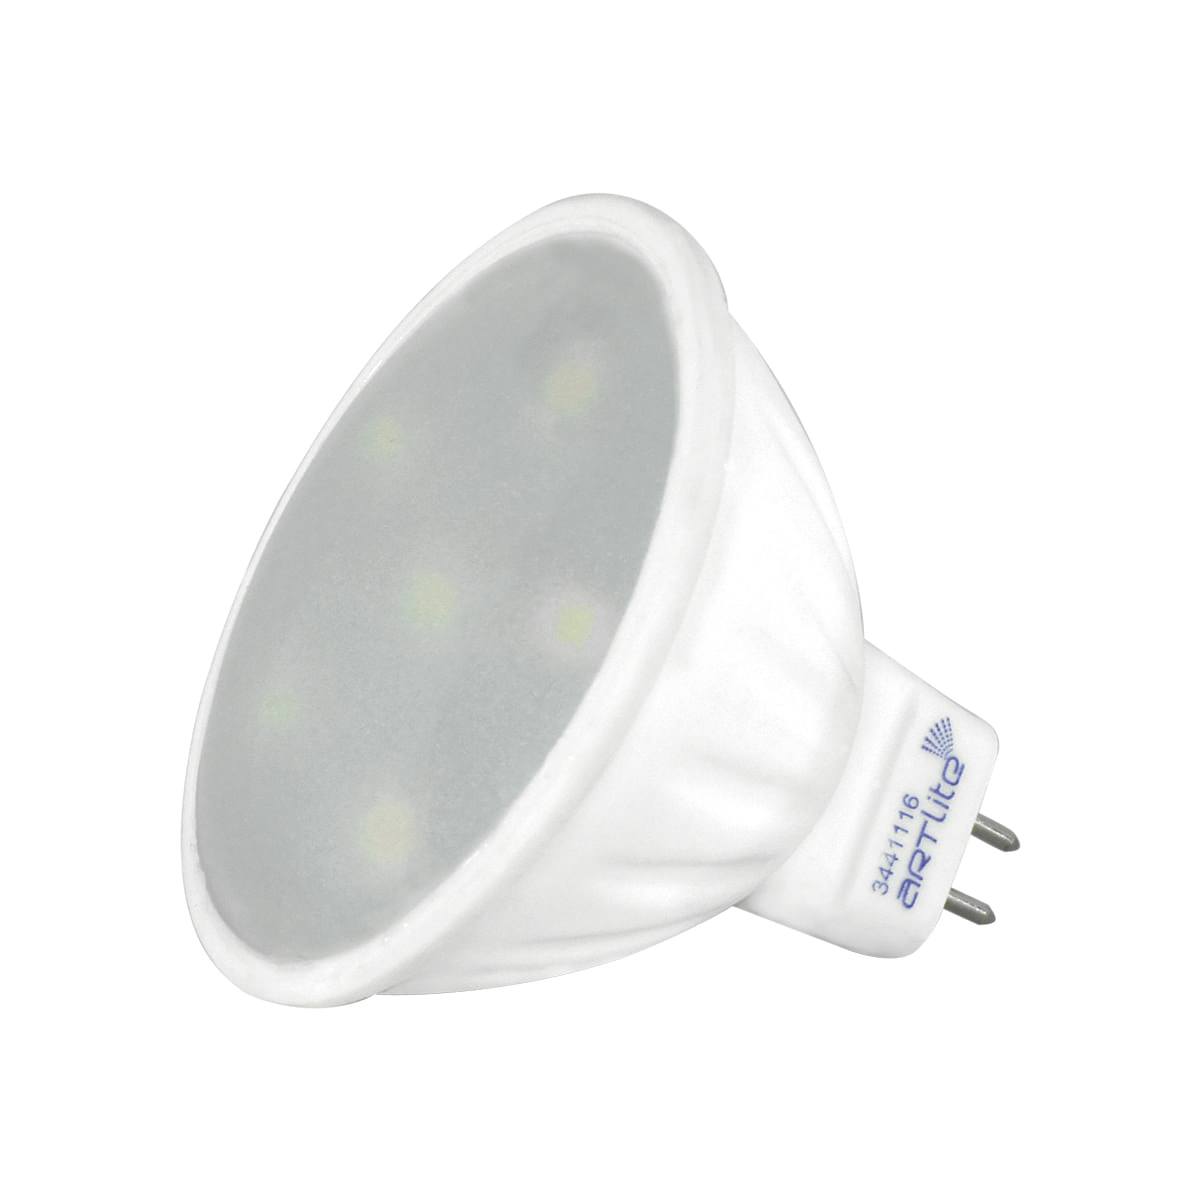 Tendencias 2020 en Iluminación LED  Innlite MX - Iluminación LED,  Luminarias LED, Proyectos de Iluminación